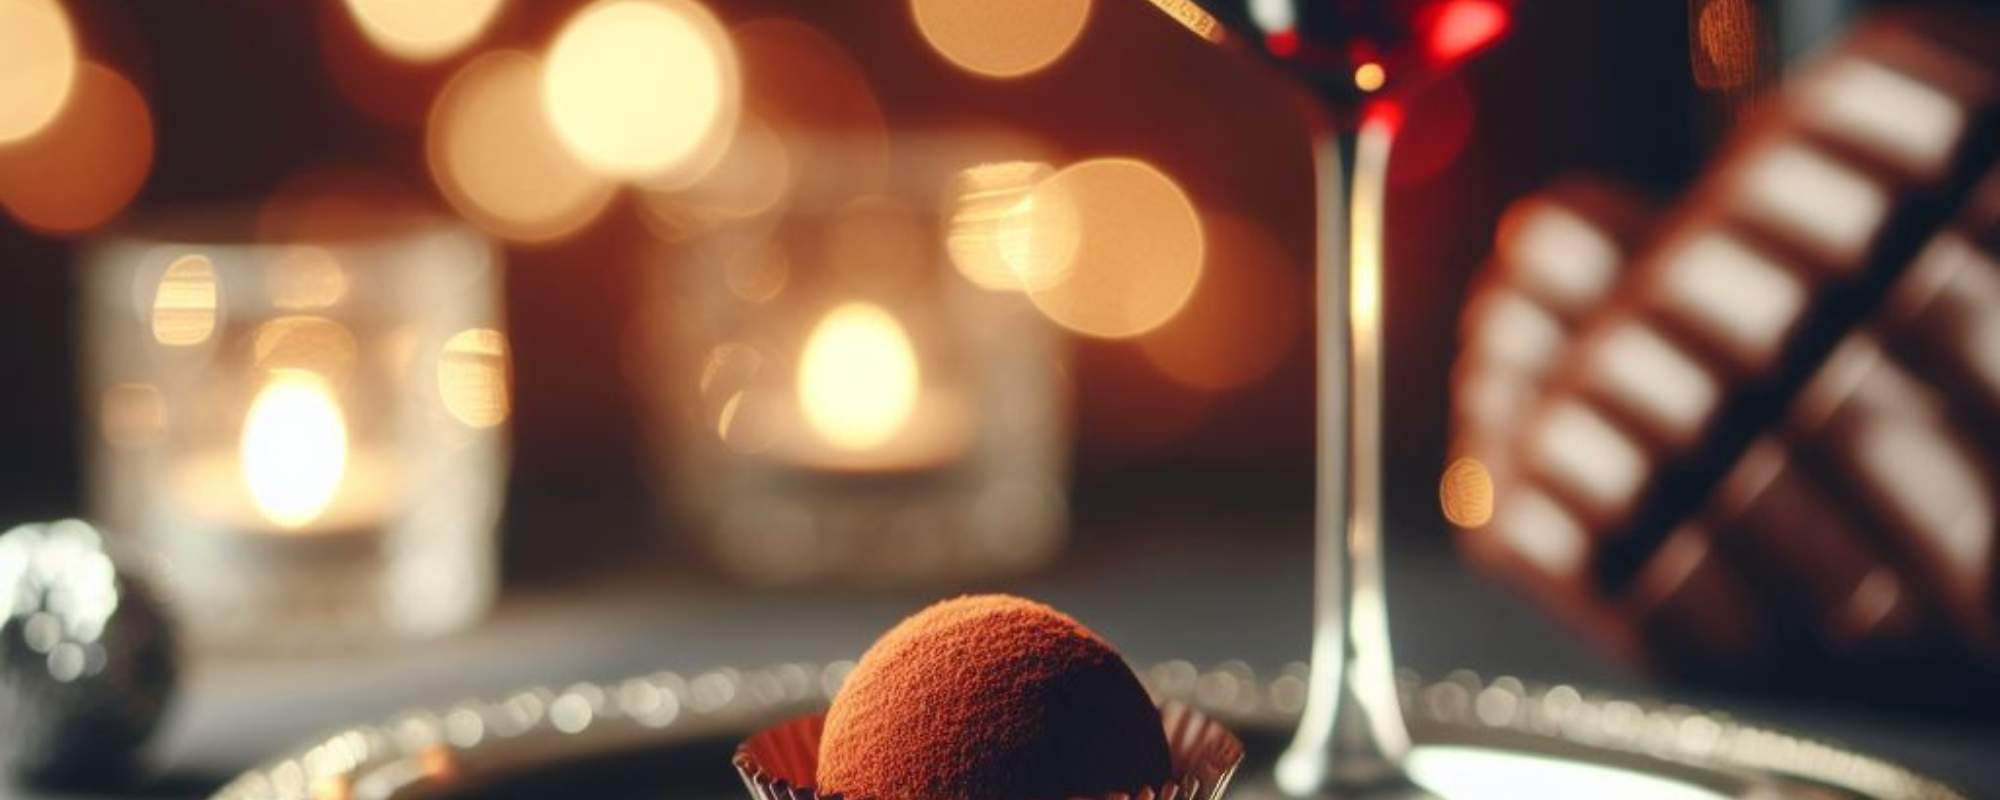 weinglas mit rotwein und schokoladen praline auf einem silbernen teller mit gelben lichtern im Hintergrund